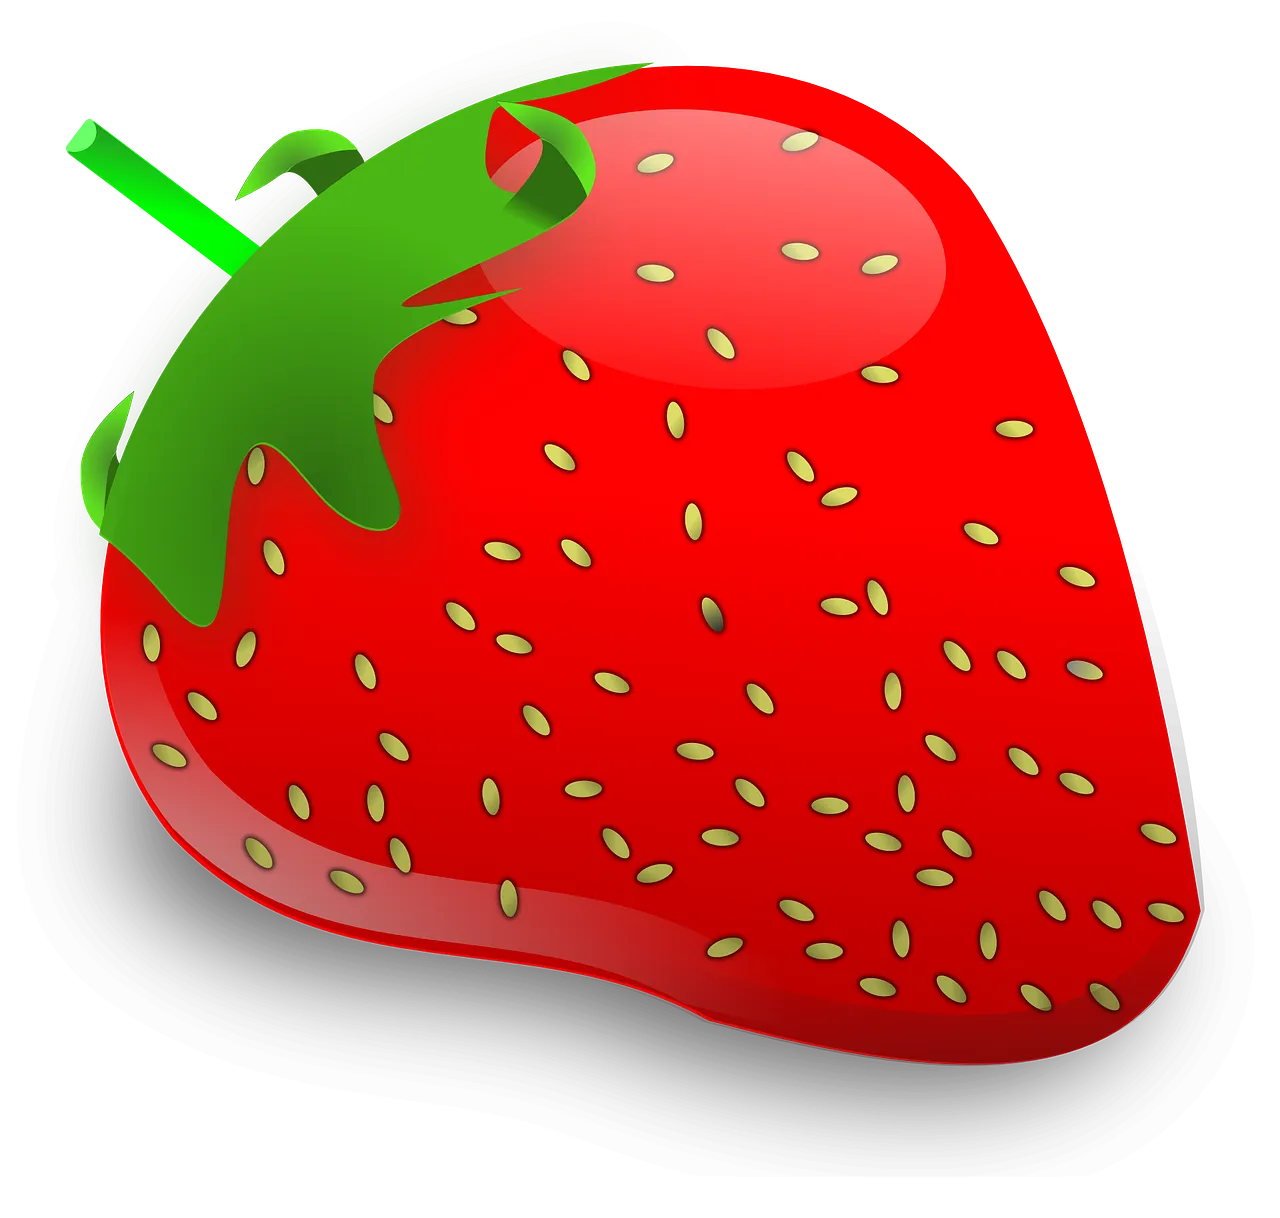 칼로리 낮은 과일 - 딸기